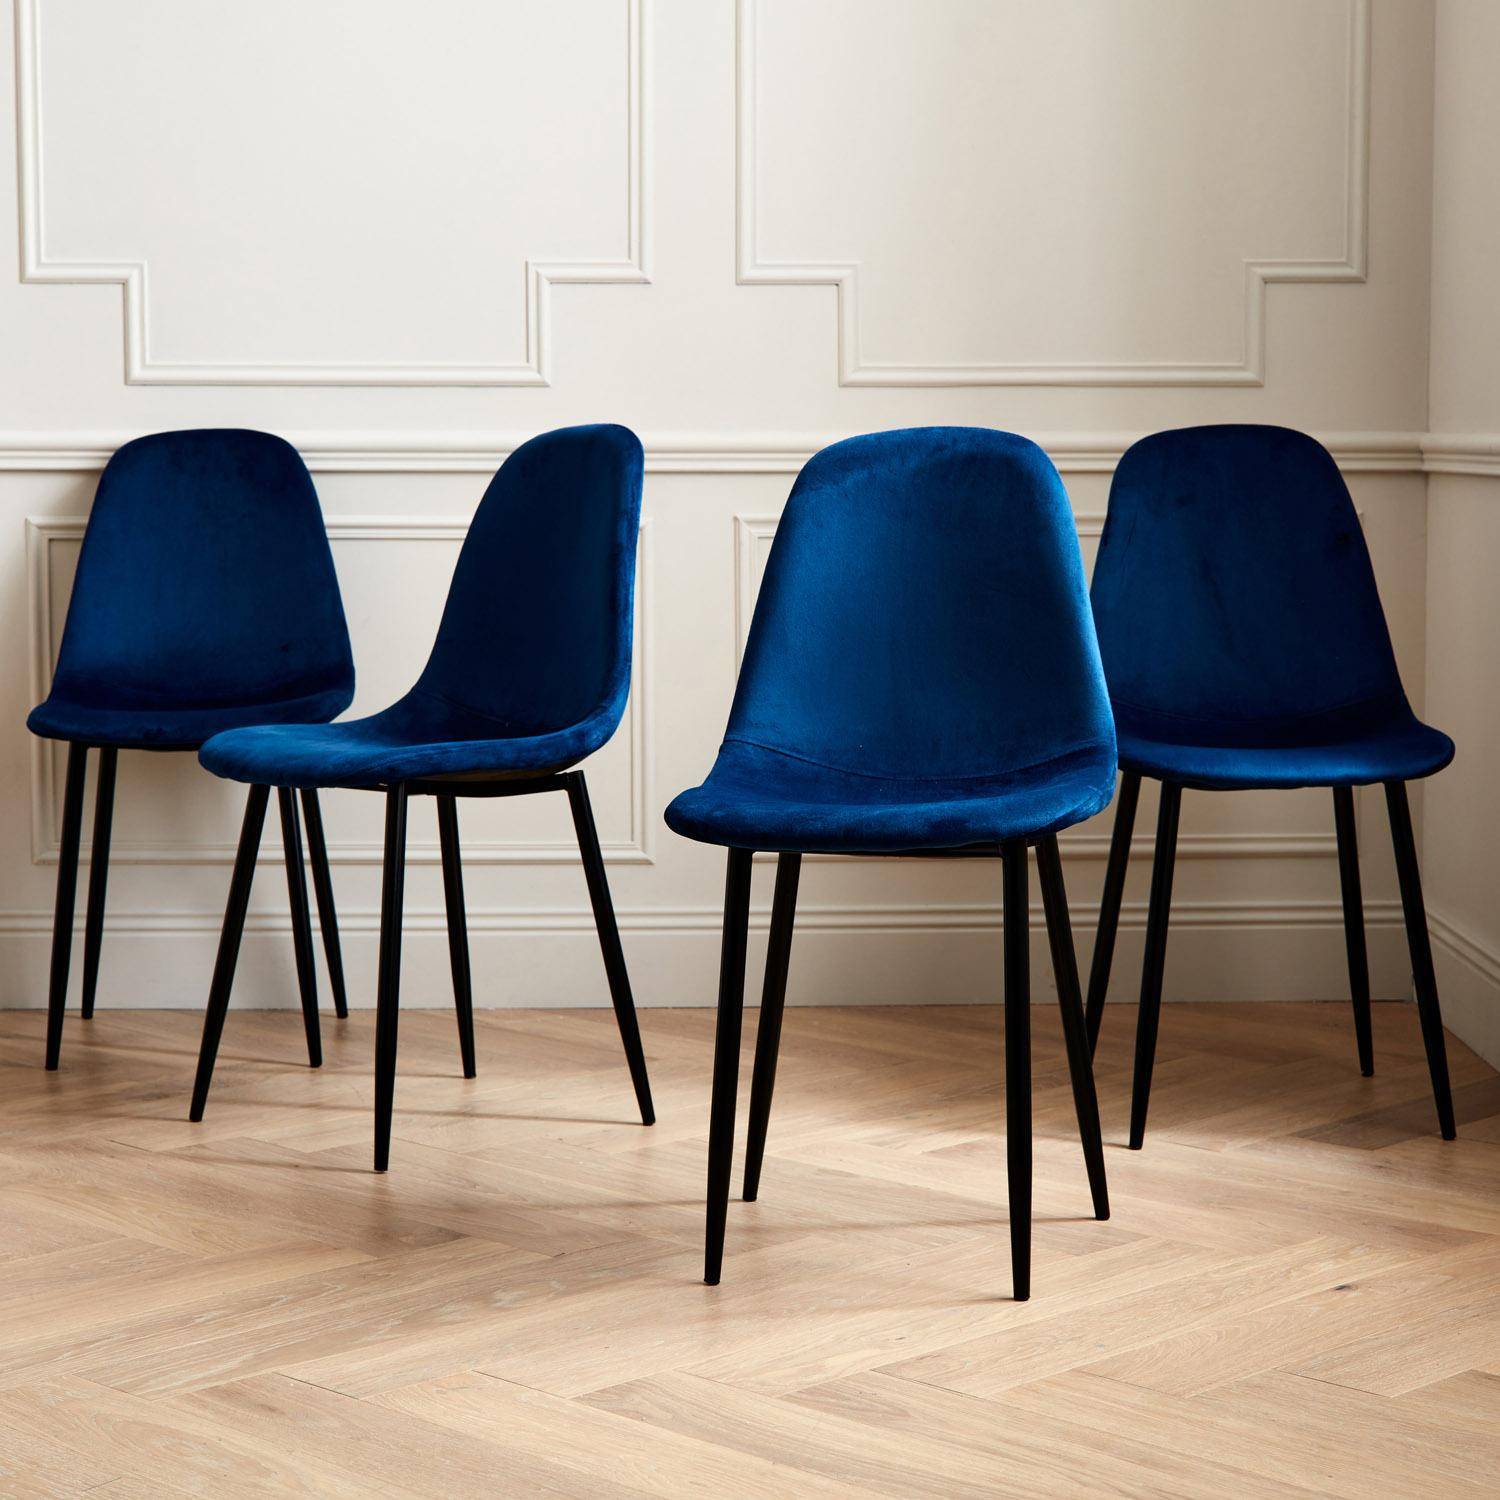 4er-Set Stühle – Bombay – Samtstühle, Blau, Metallbeine, Vintage, bequem, Design, Stahlrahmen, B44x T53 x H88cm Photo1